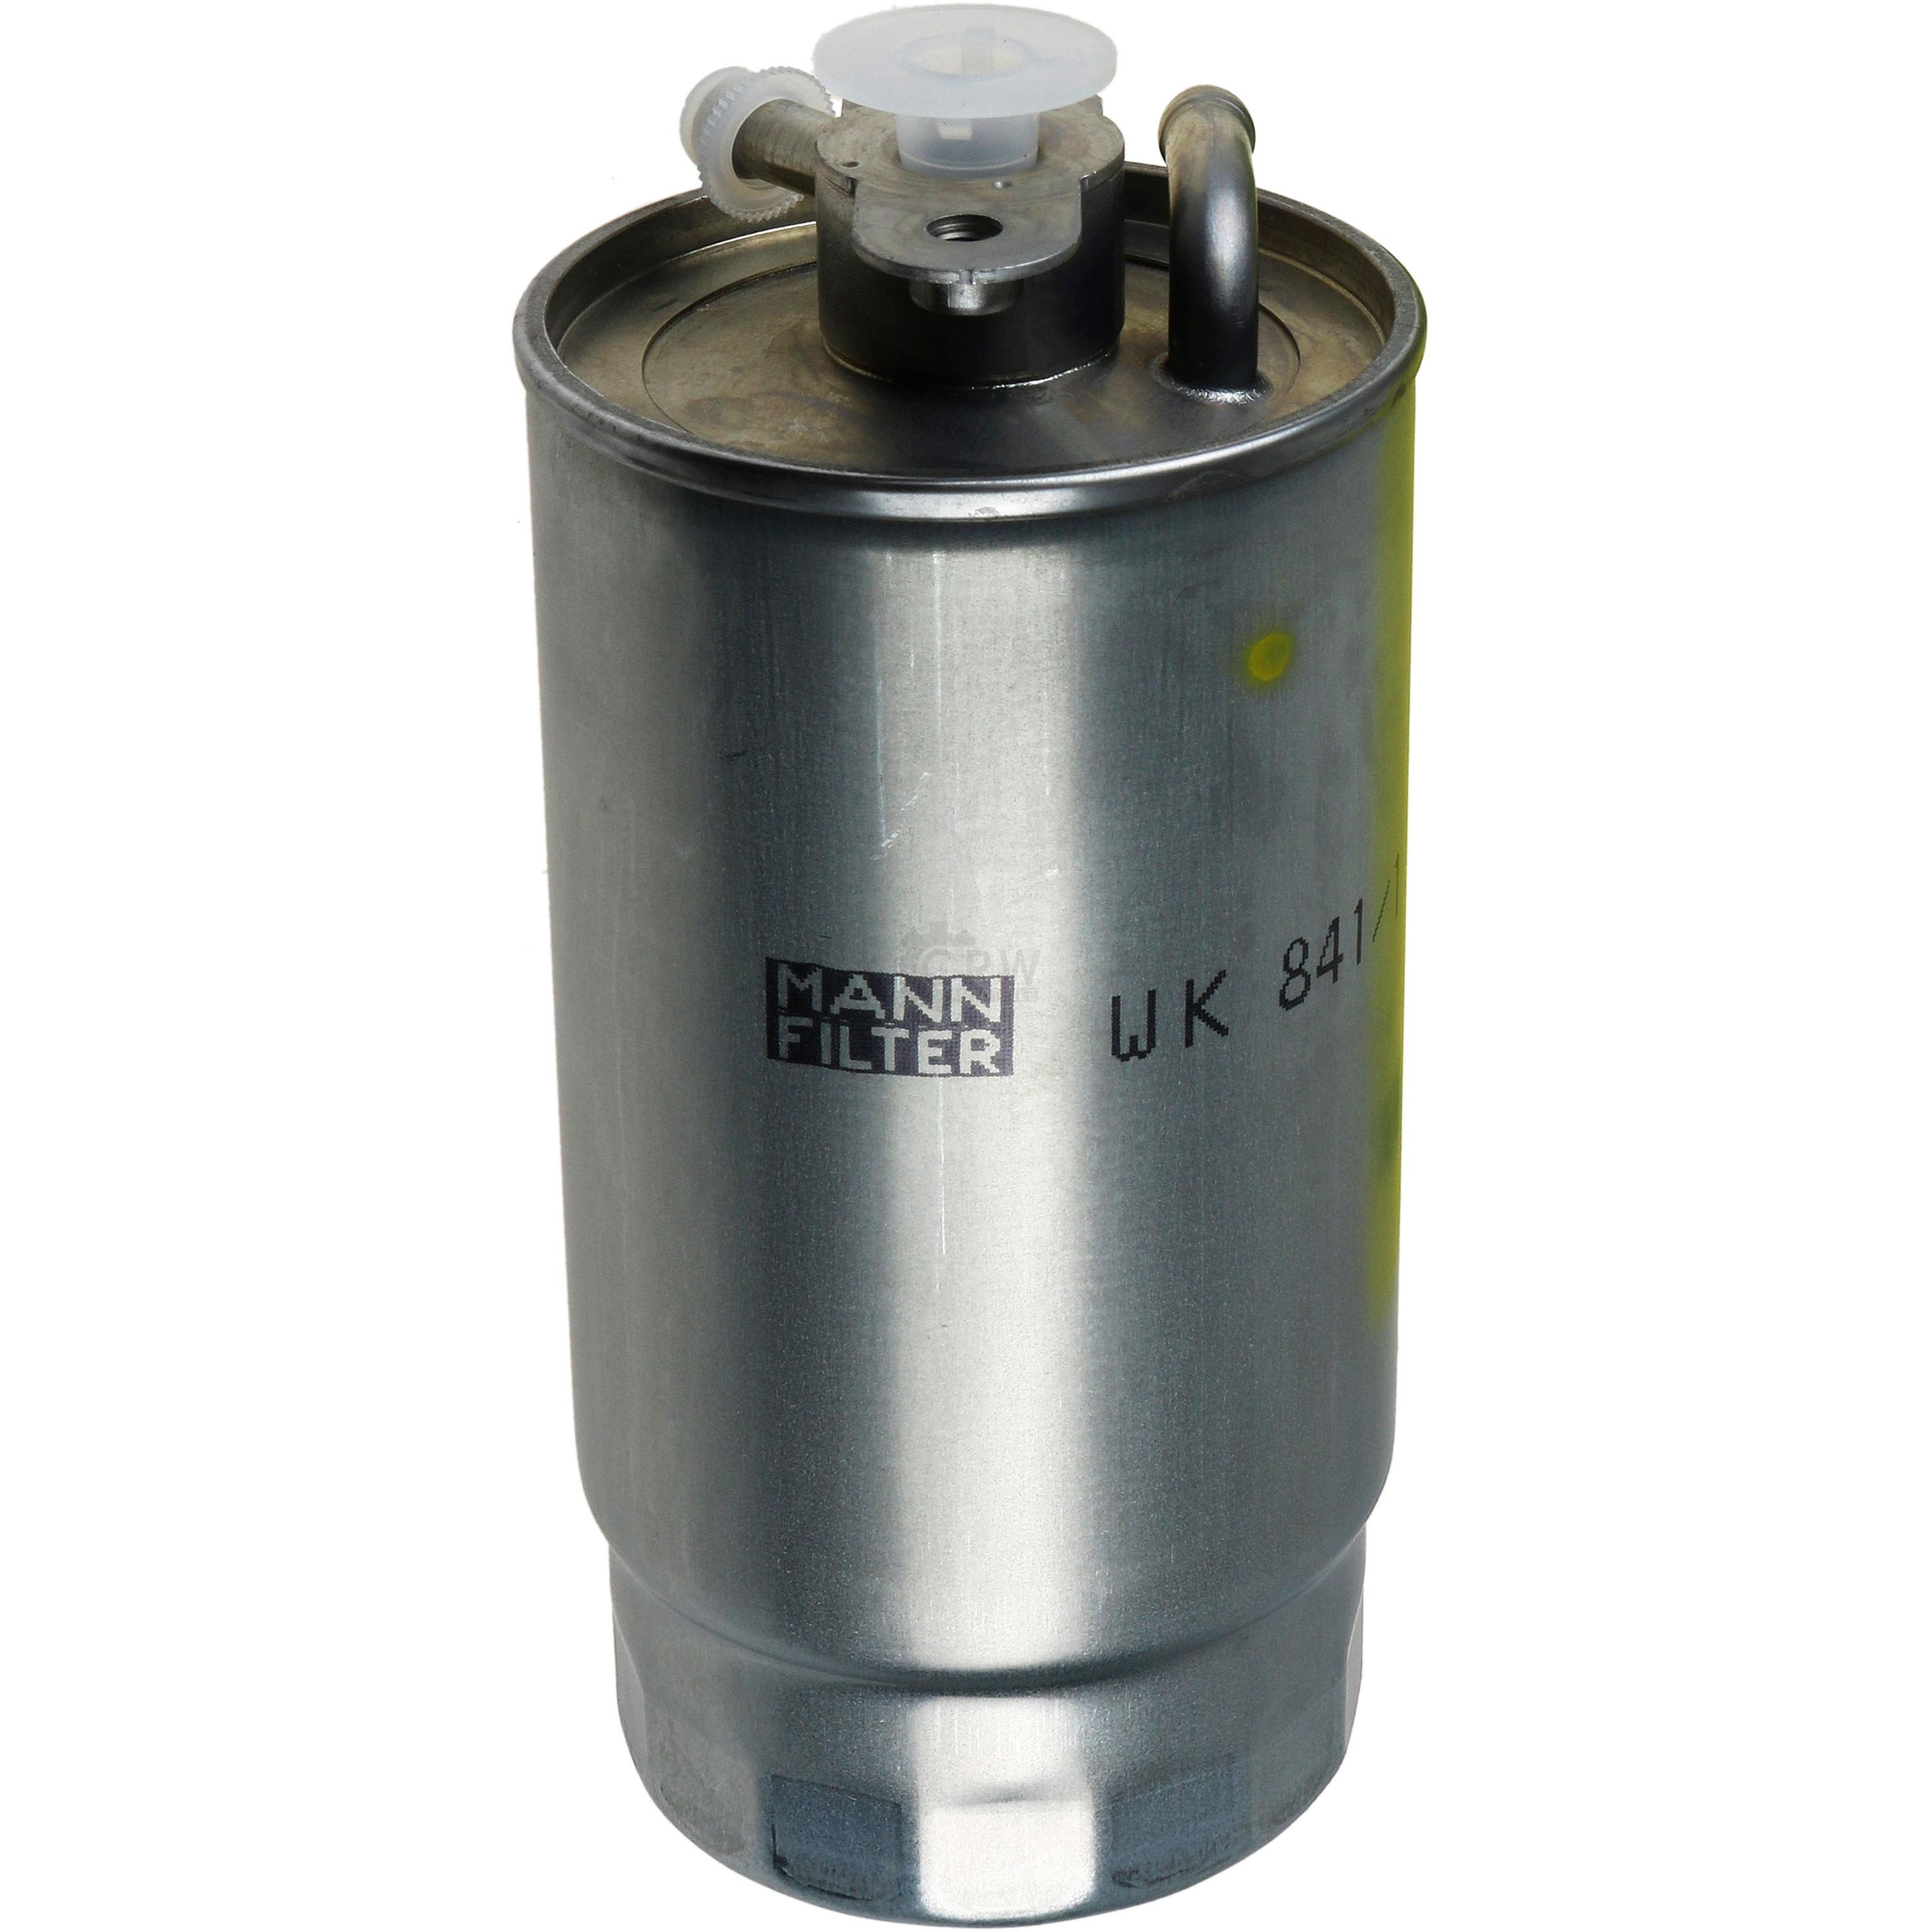 MANN-FILTER Kraftstofffilter WK 841/1 Fuel Filter